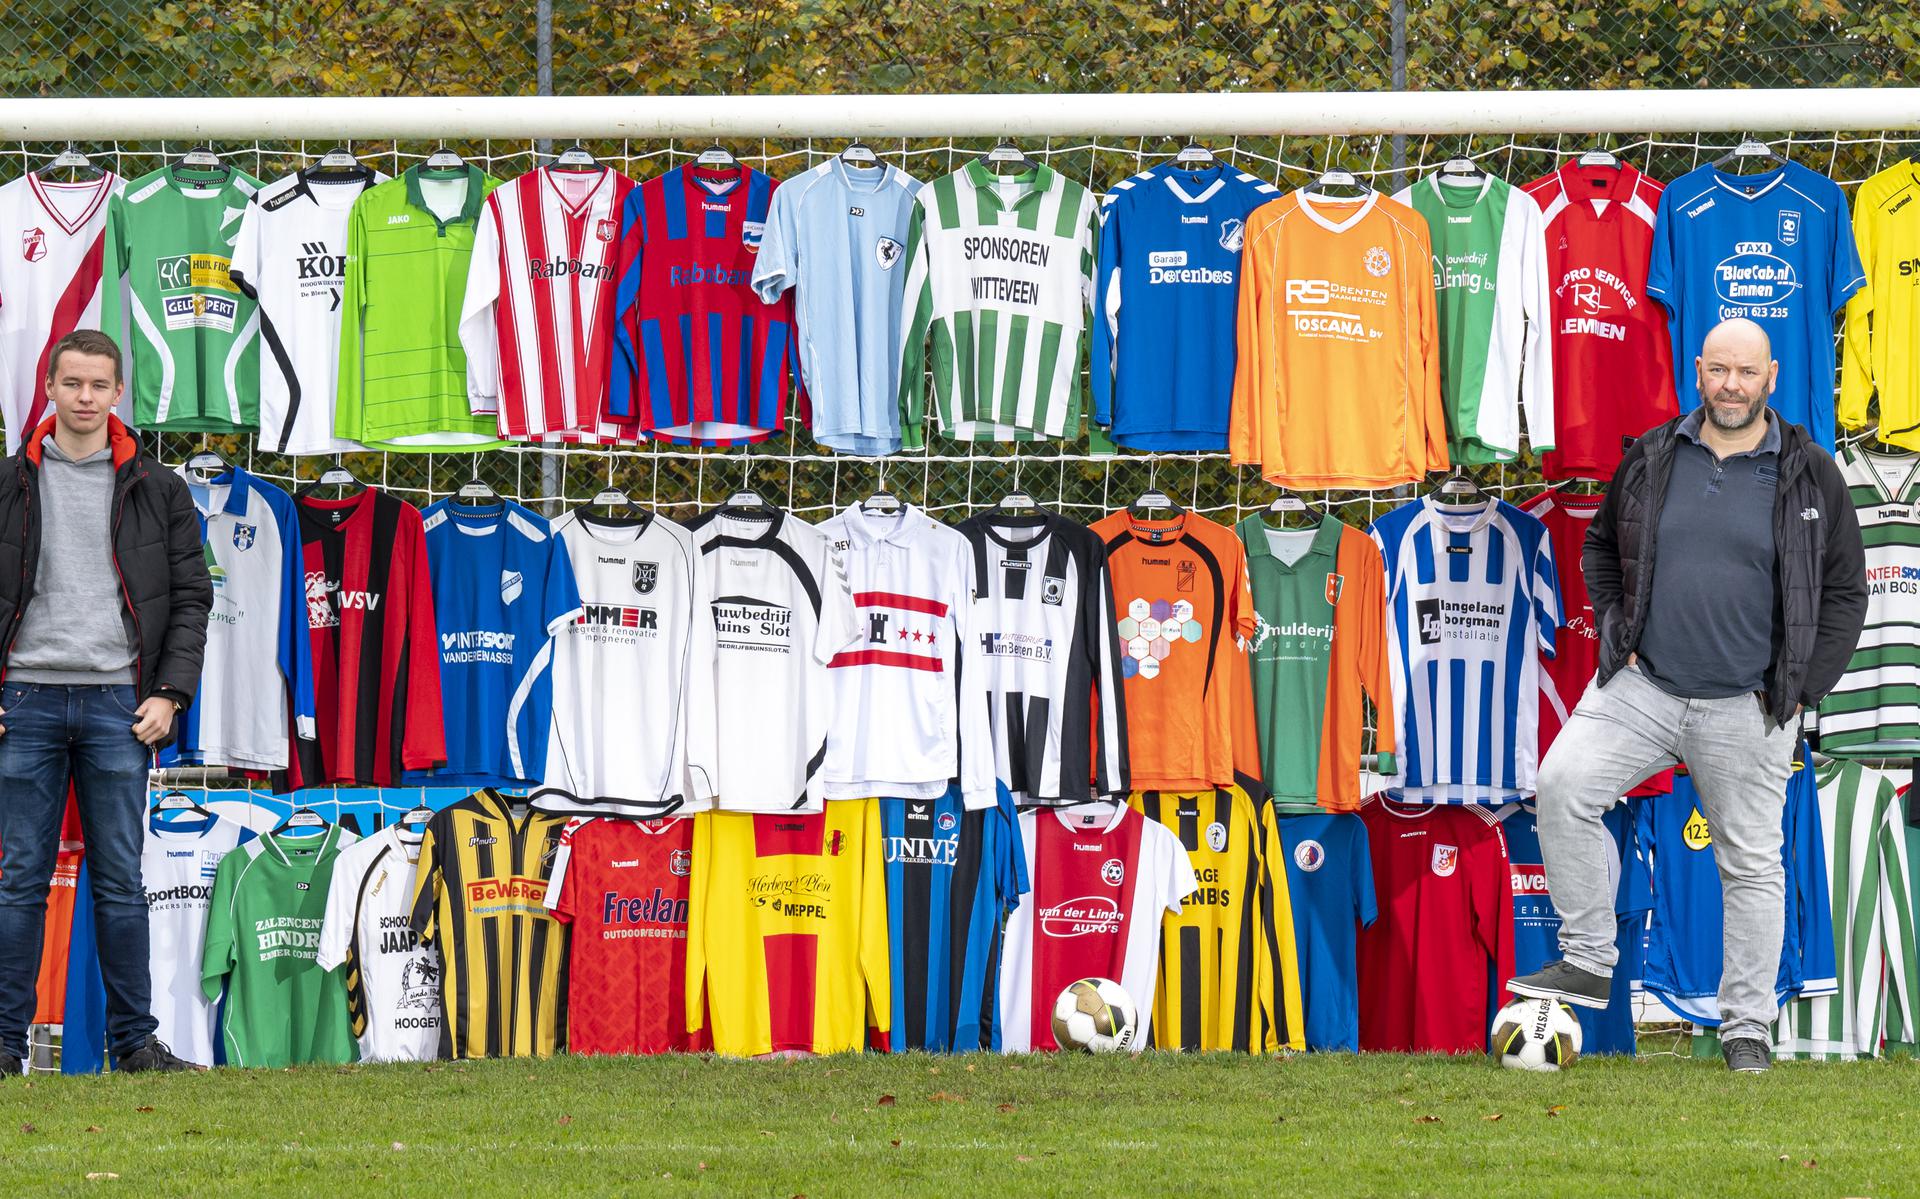 Welke voetbalploeg steelt de show op het veld met een bijzonder Dit zijn de mooiste broekjes en -shirts volgens een deskundige jury - Dagblad van het Noorden